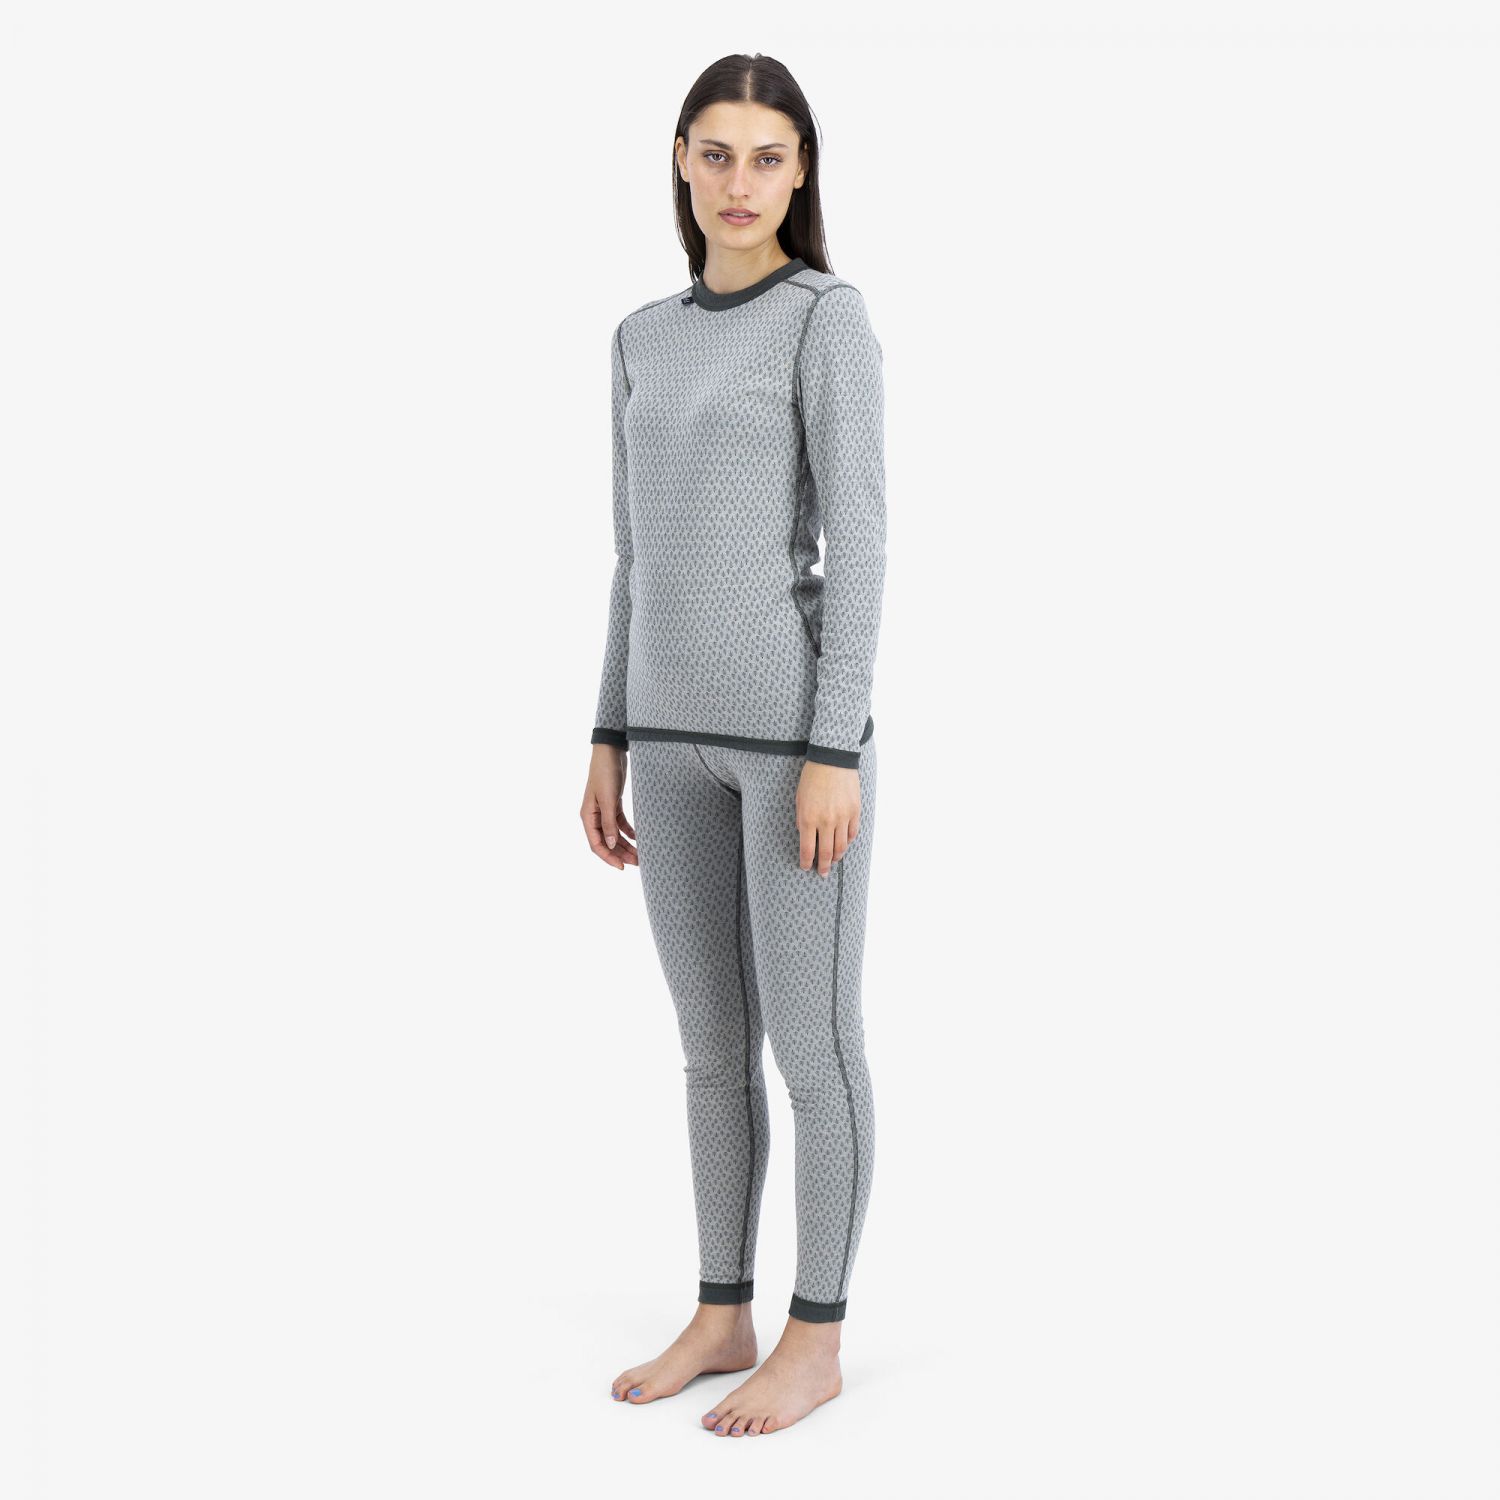 https://images.aktivcdn.dk/vare/ulvang-comfort-200-round-neck-ski-underwear-women-agate-greyurban-chic-21685_271504_21685.jpg